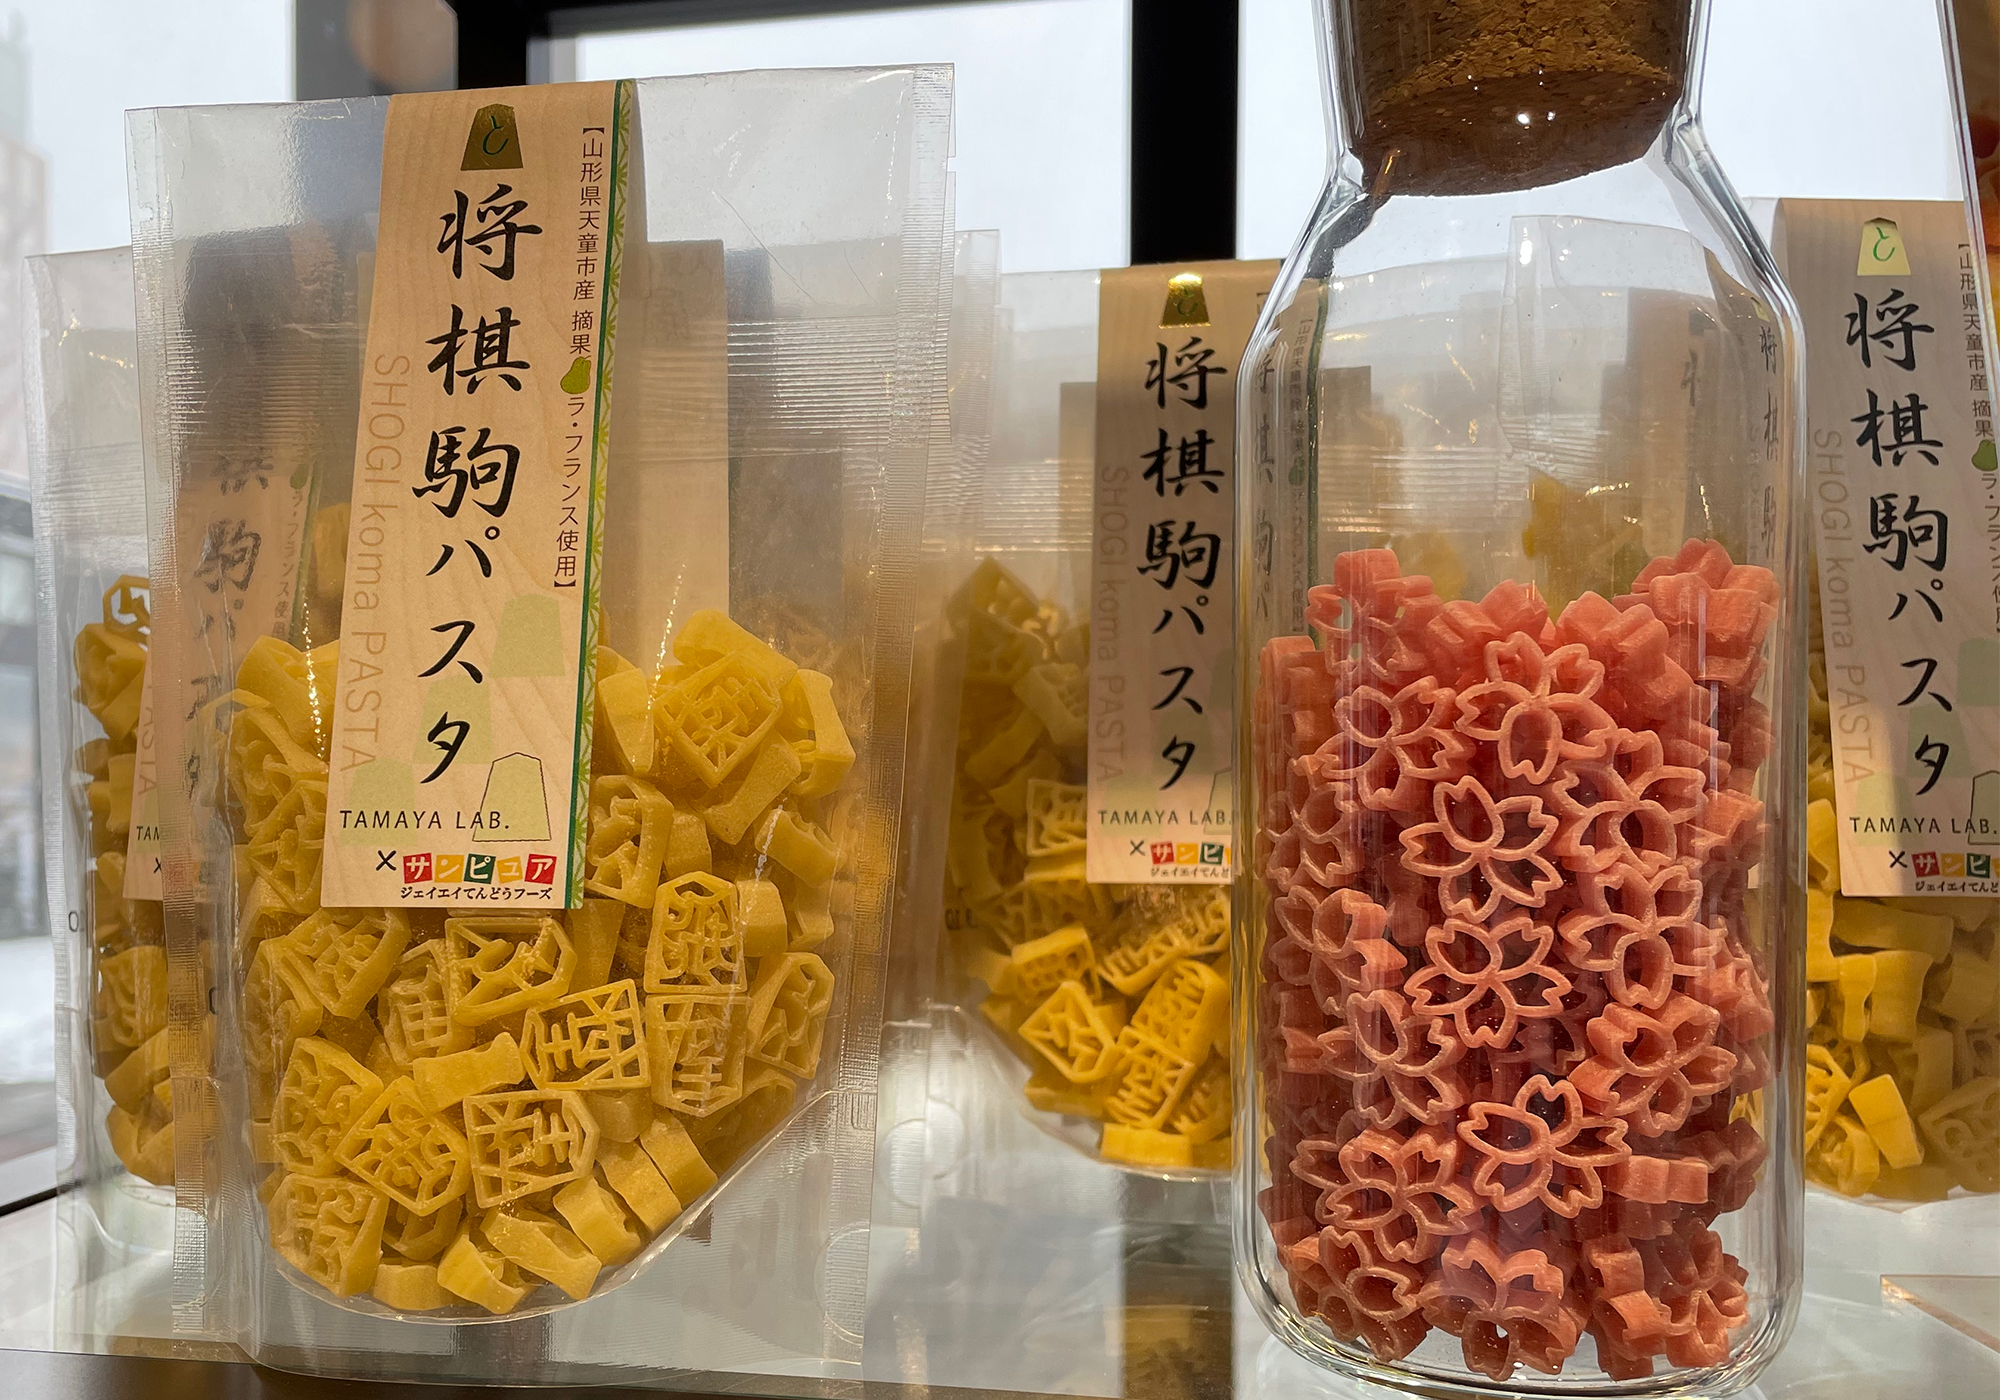 Shogi macaroni